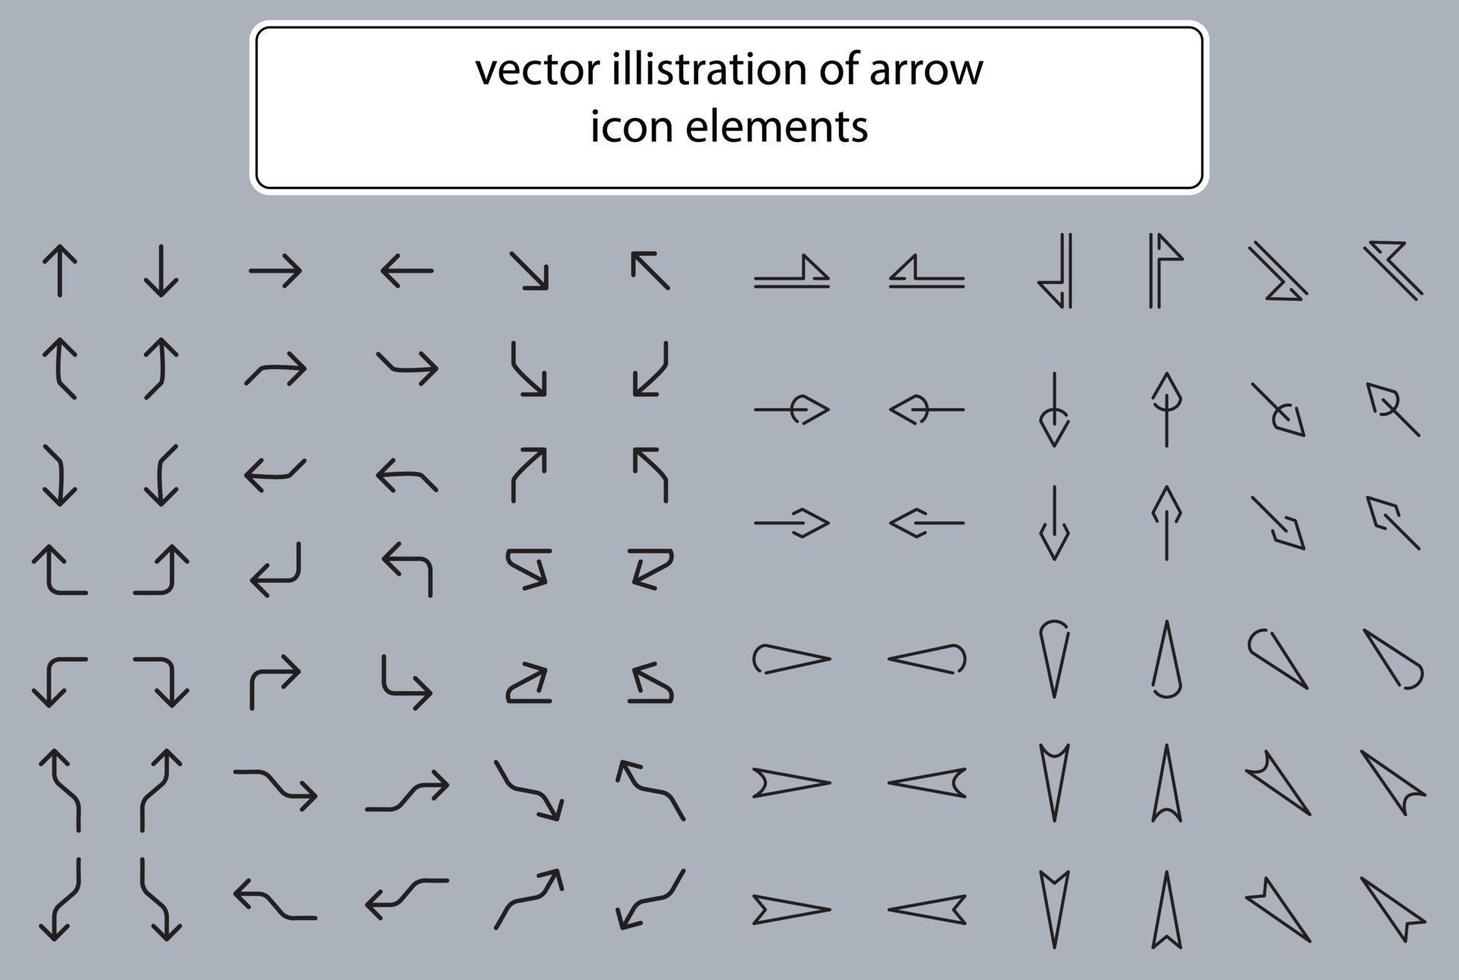 conjunto de elemento de señalización de diseño de icono de ilustración de flecha para información tecnológica. vector